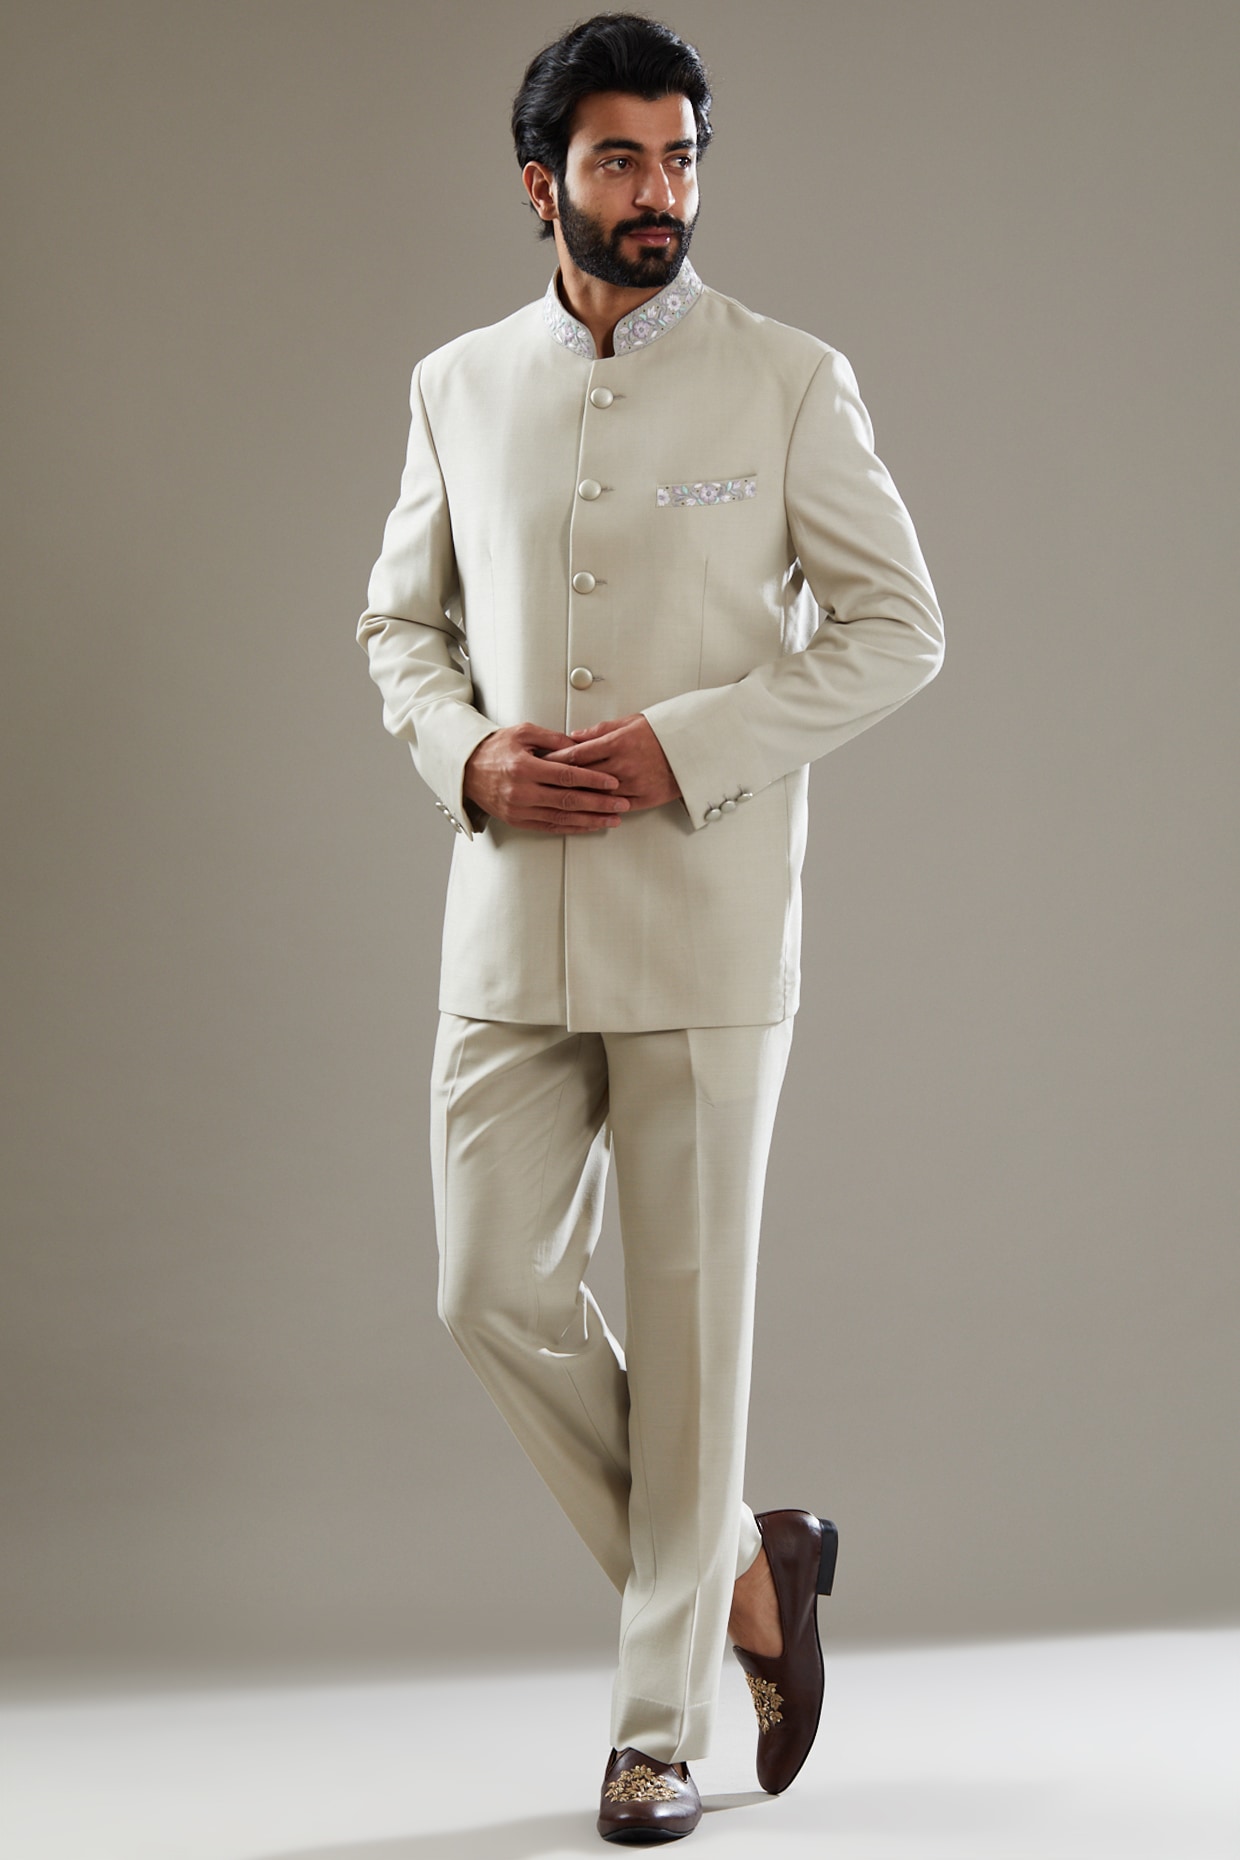 Men Black Pathani Suit Kurta Pyjama Jacket Set at Rs 3000/piece(s) | Khan  Dress in New Delhi | ID: 12415179597